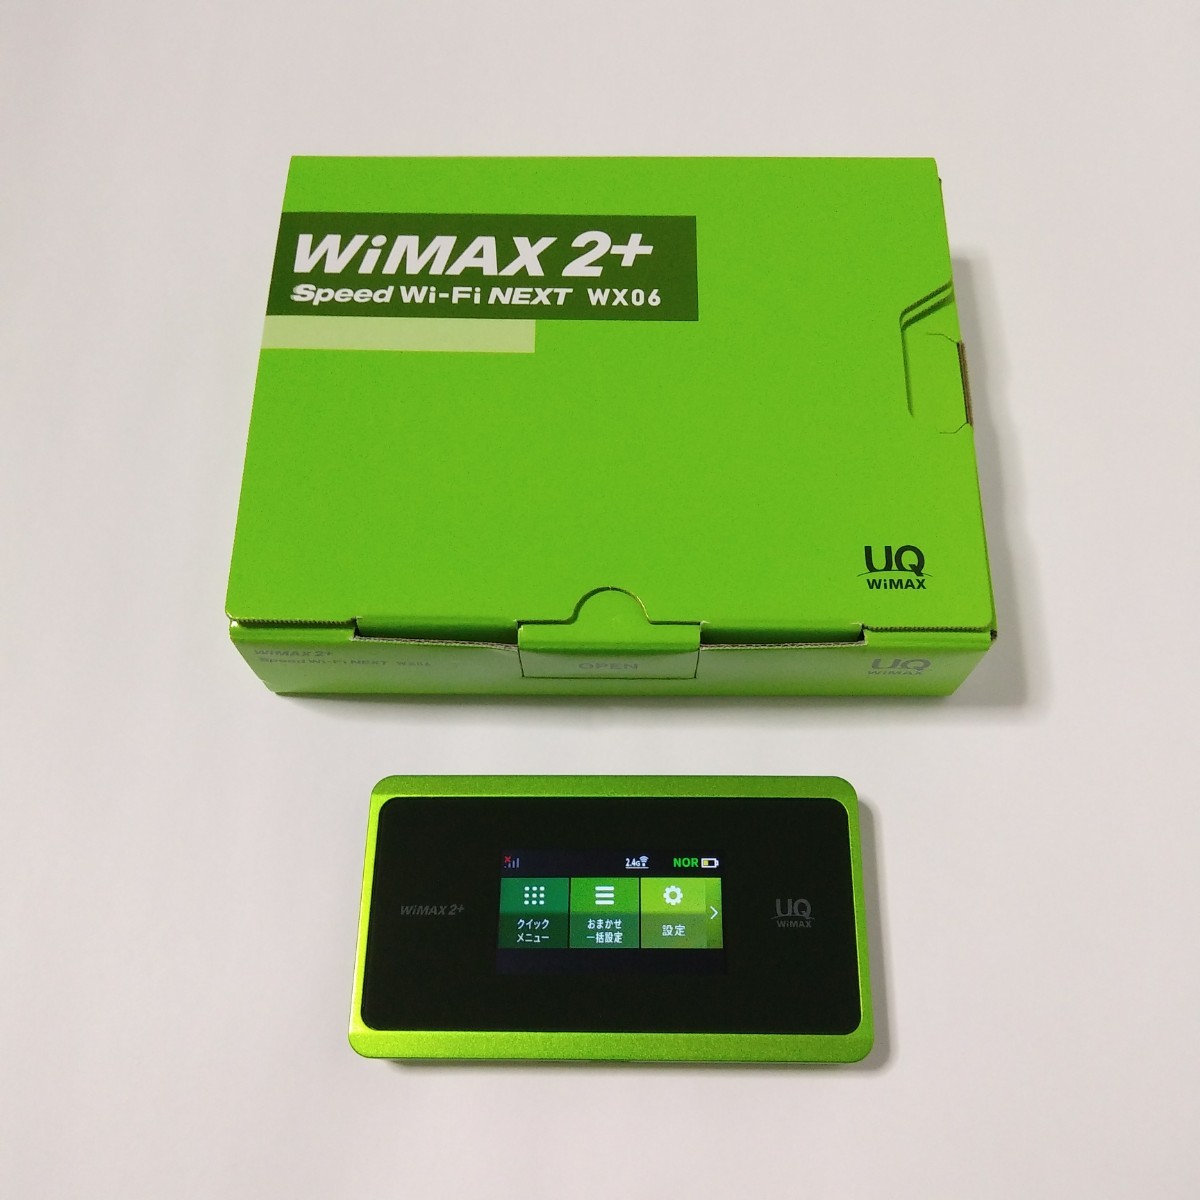 Speed Wi-Fi NEXT WX06 mineo LINEモバイル IIJmio BIGLOBEモバイル イオンモバイル